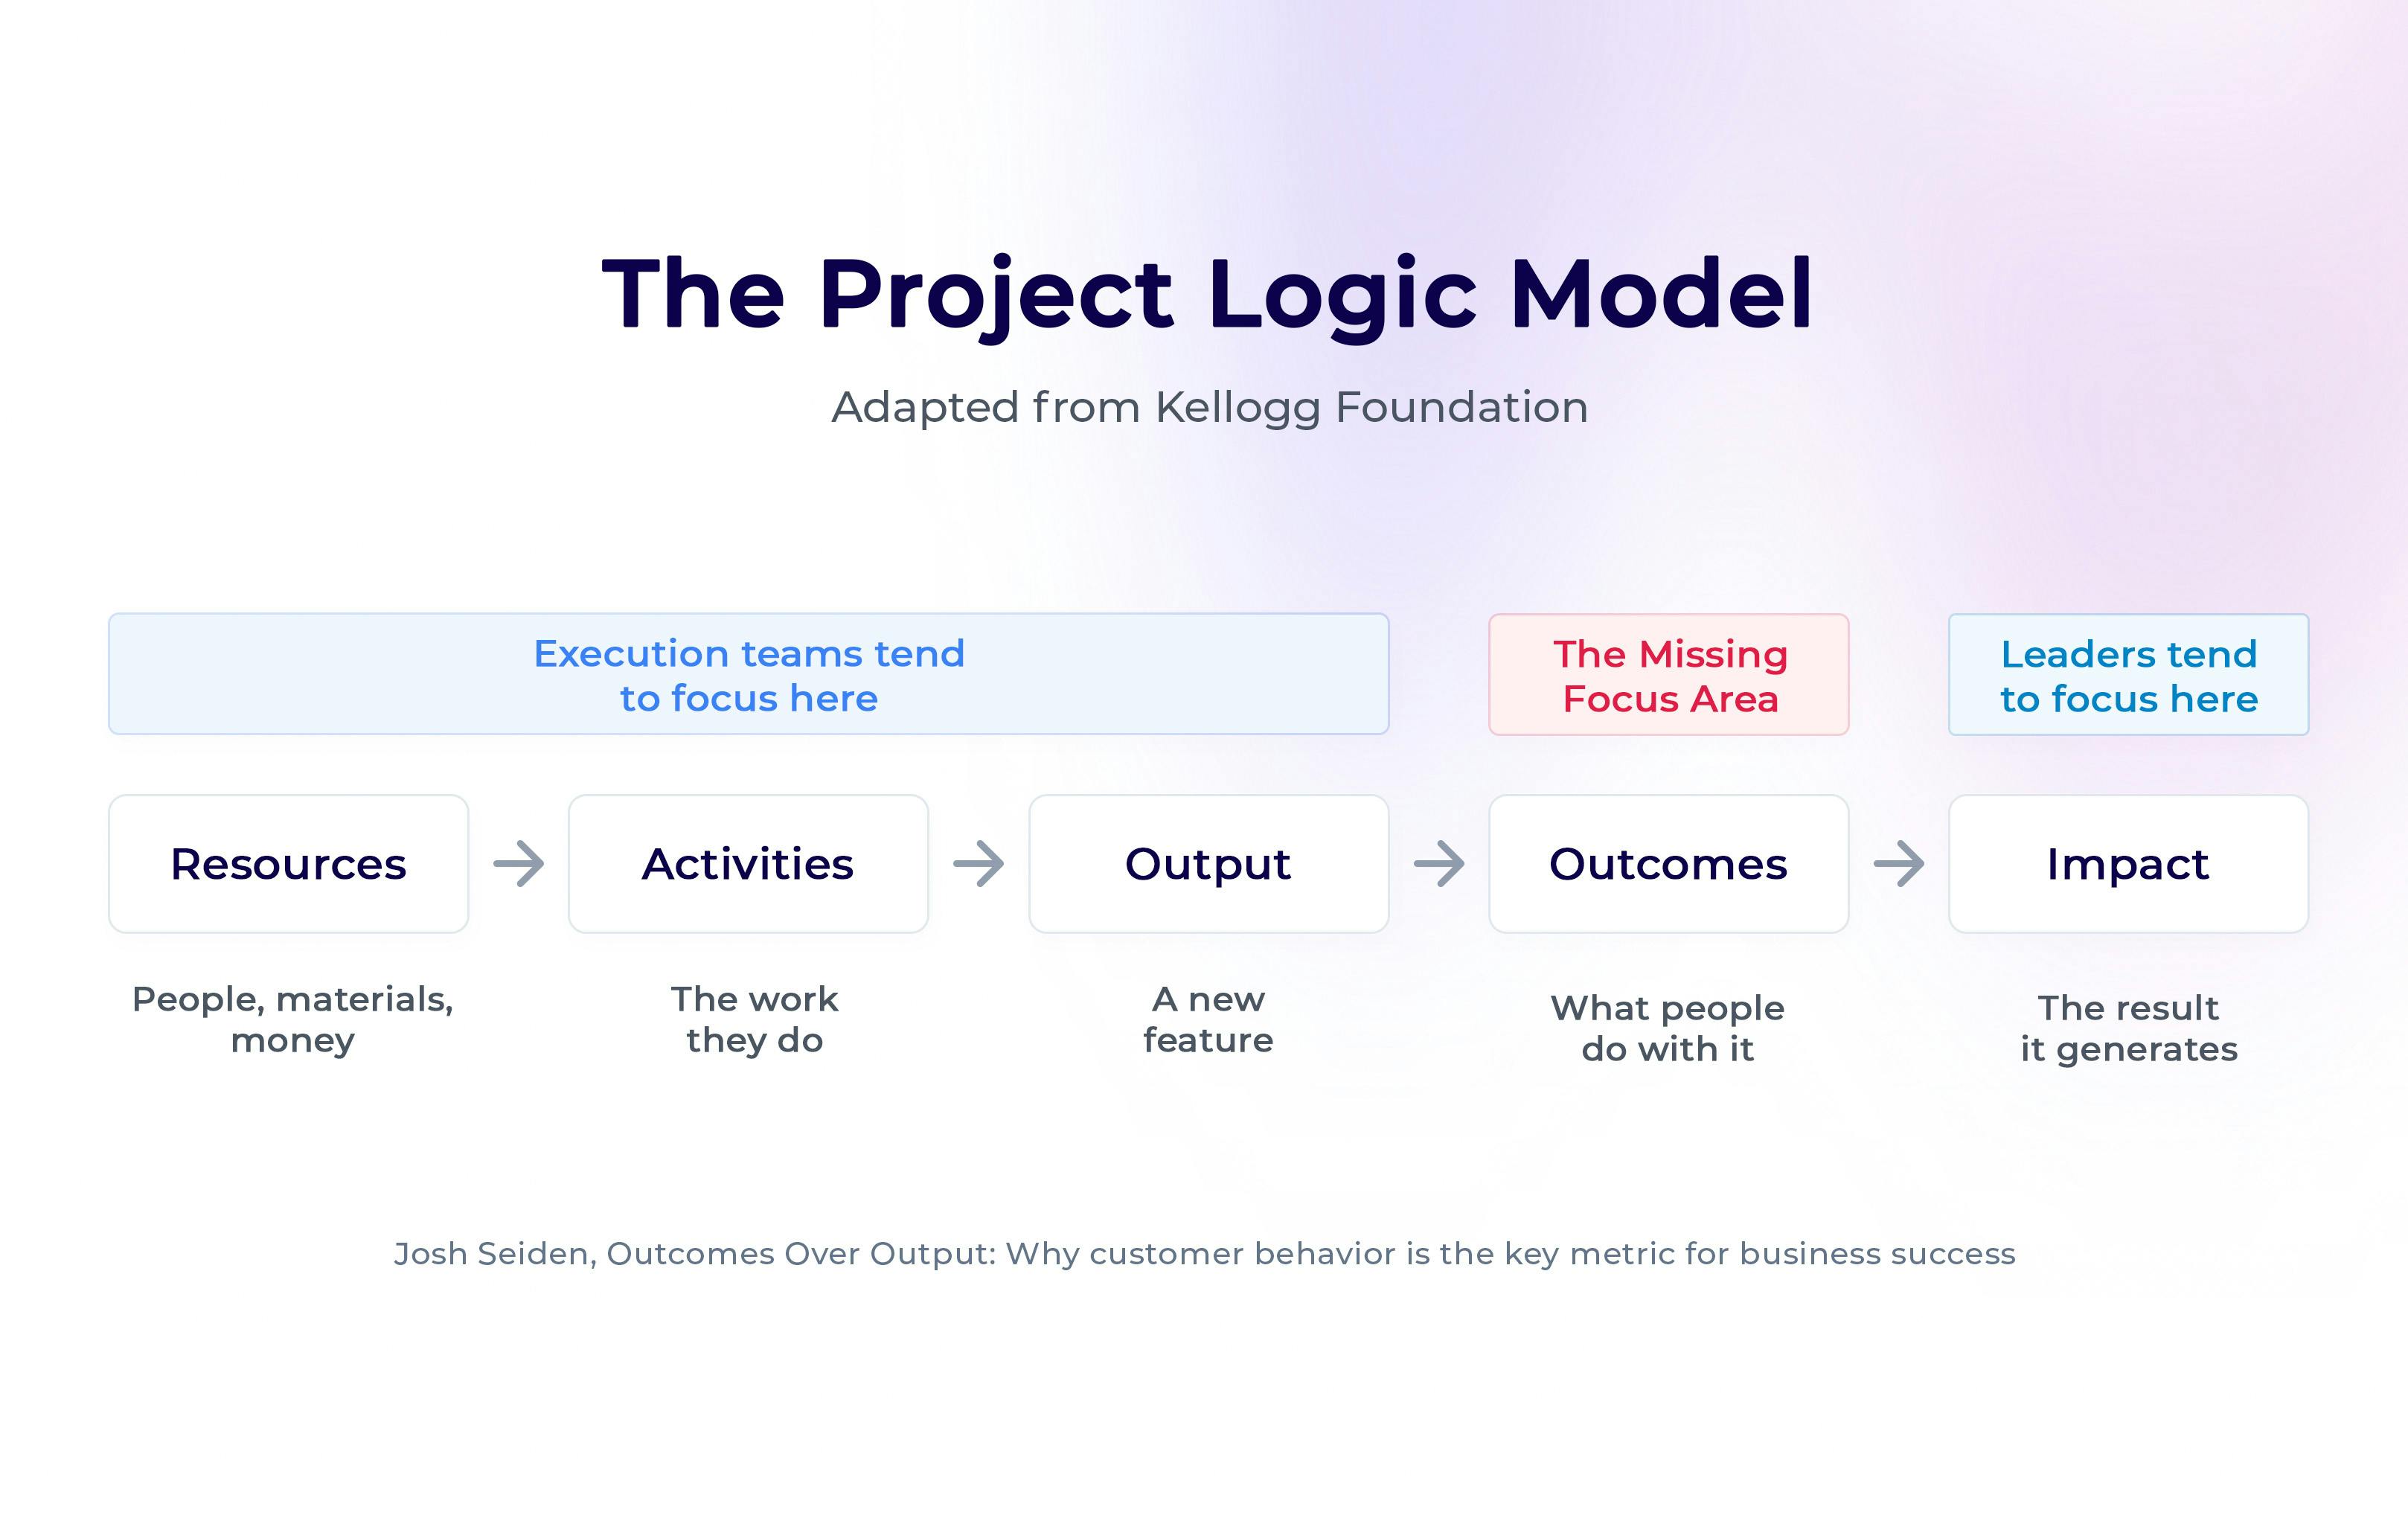 The Project Logic Model by Josh Seiden